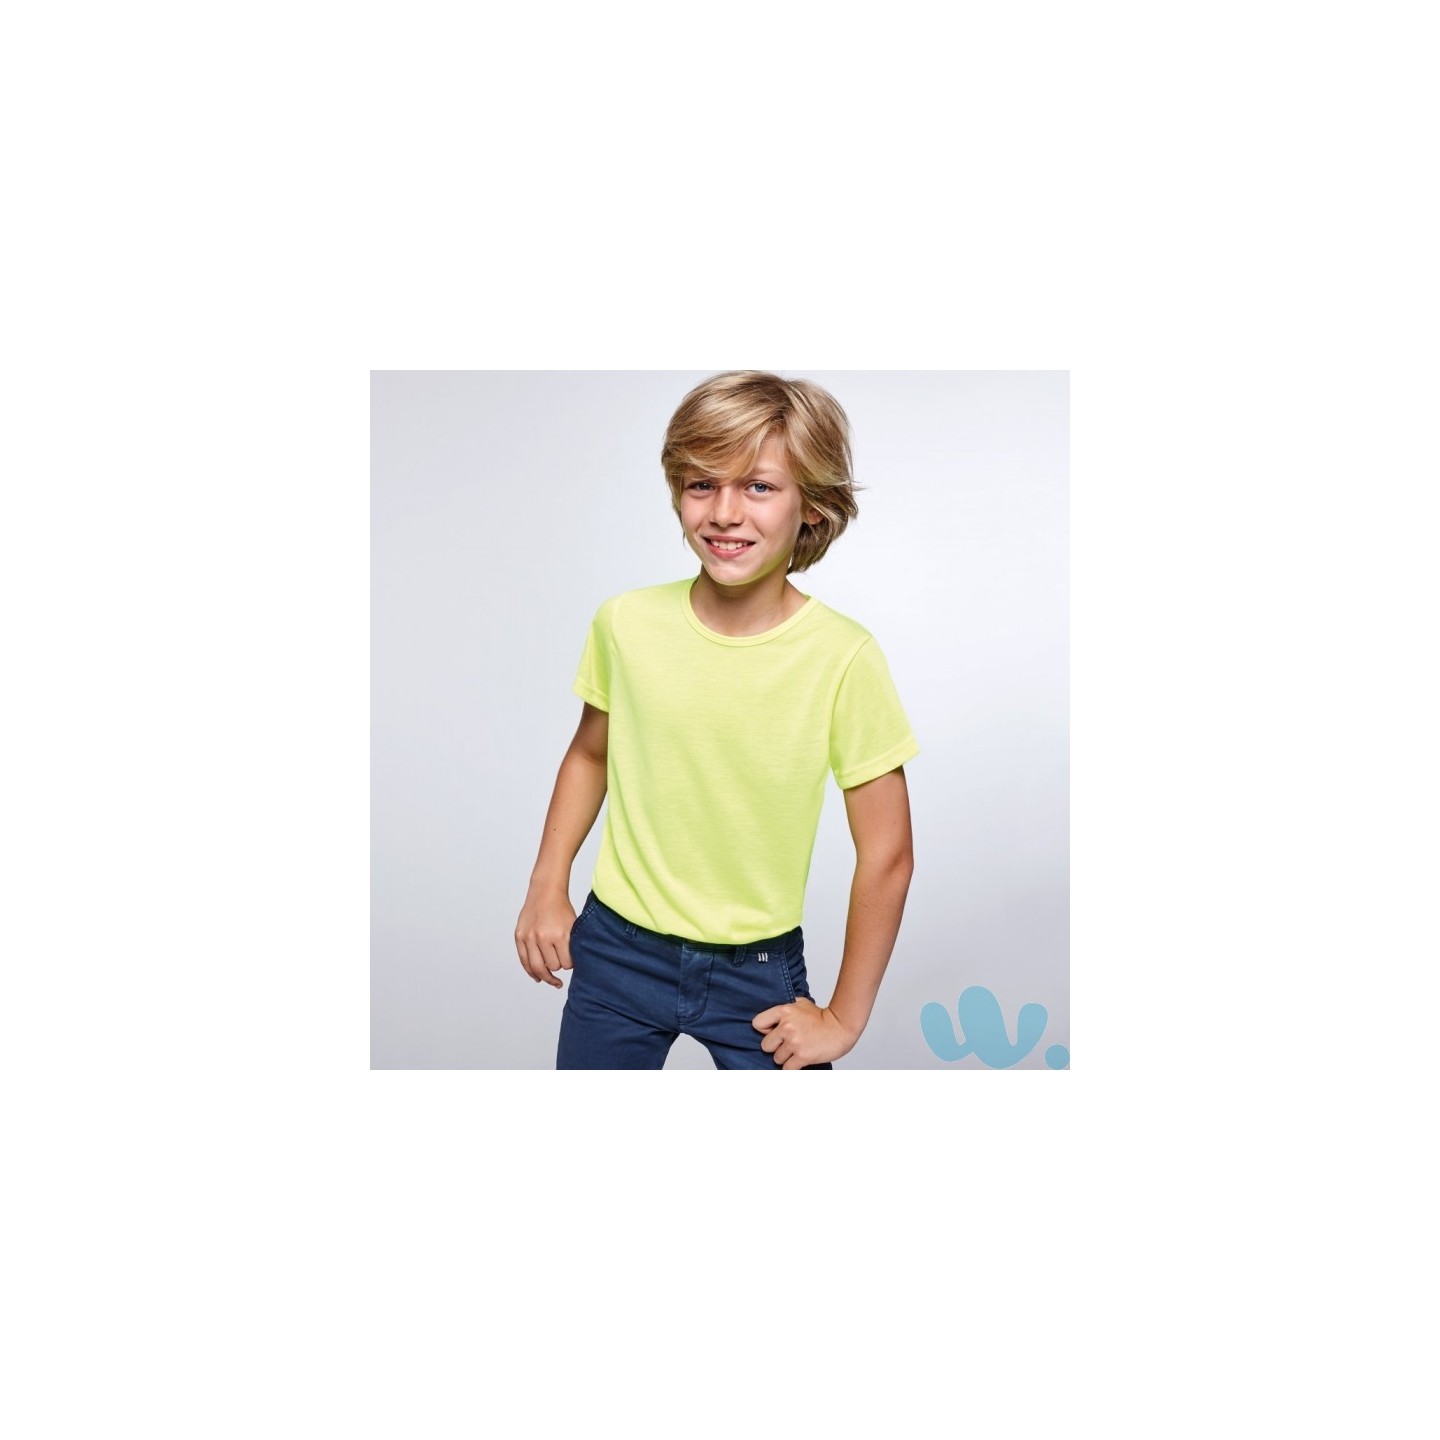 Vestiging Hij Eekhoorn Fluo T-shirt kind neon geel | Jokershop.be - Fluo kleding